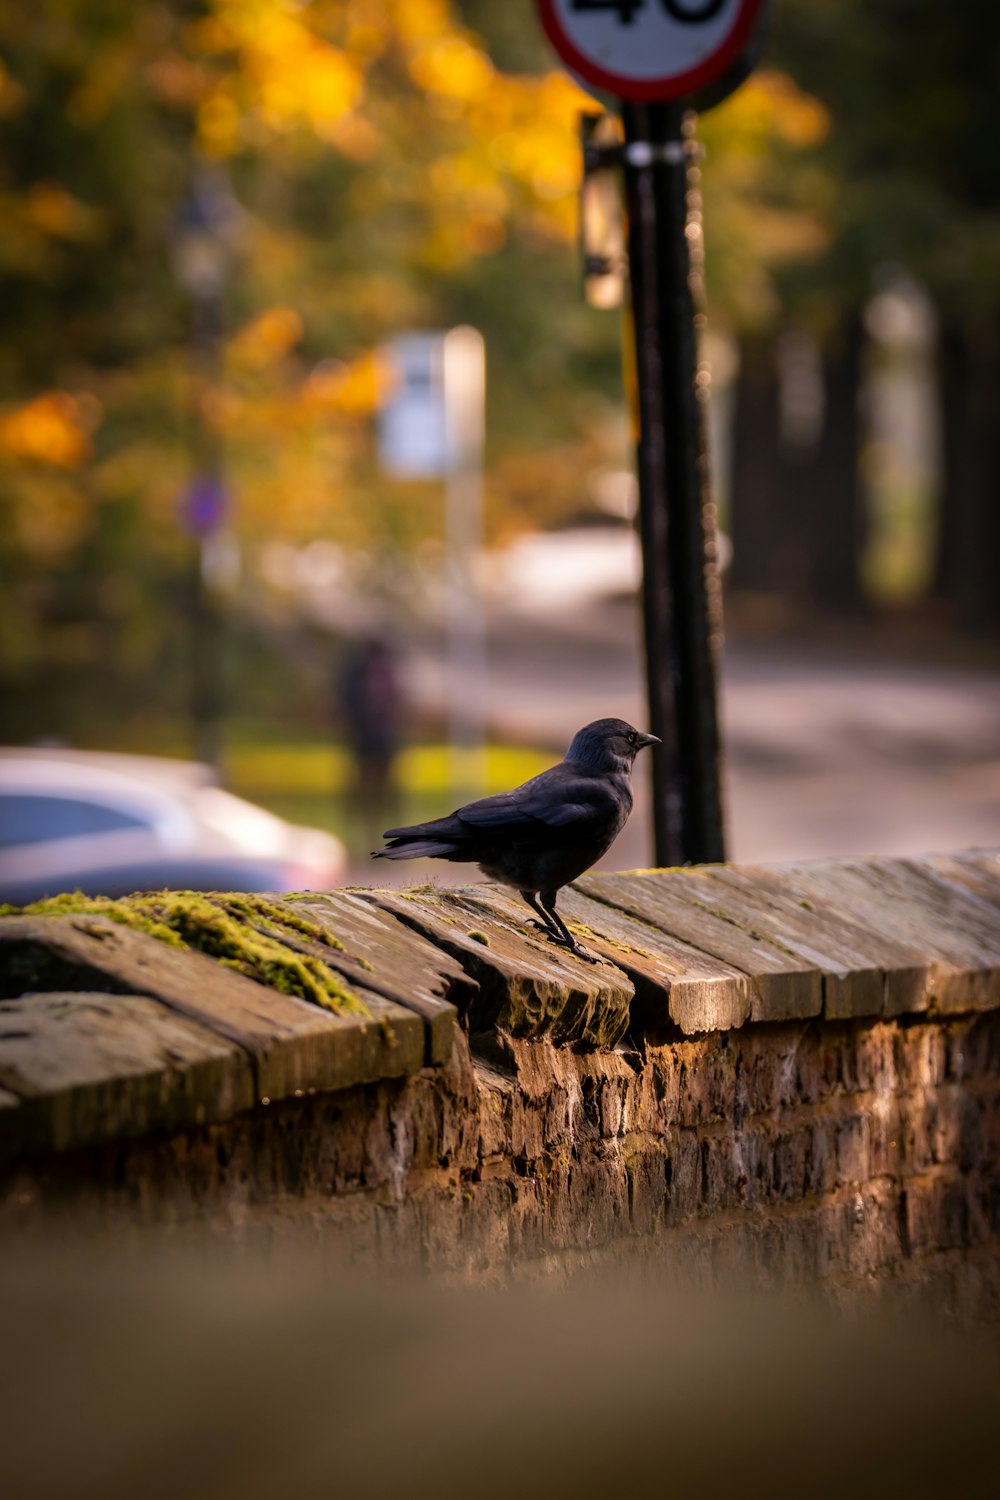 거리 표지판 옆 나무 난간에 앉아 있는 검은 새